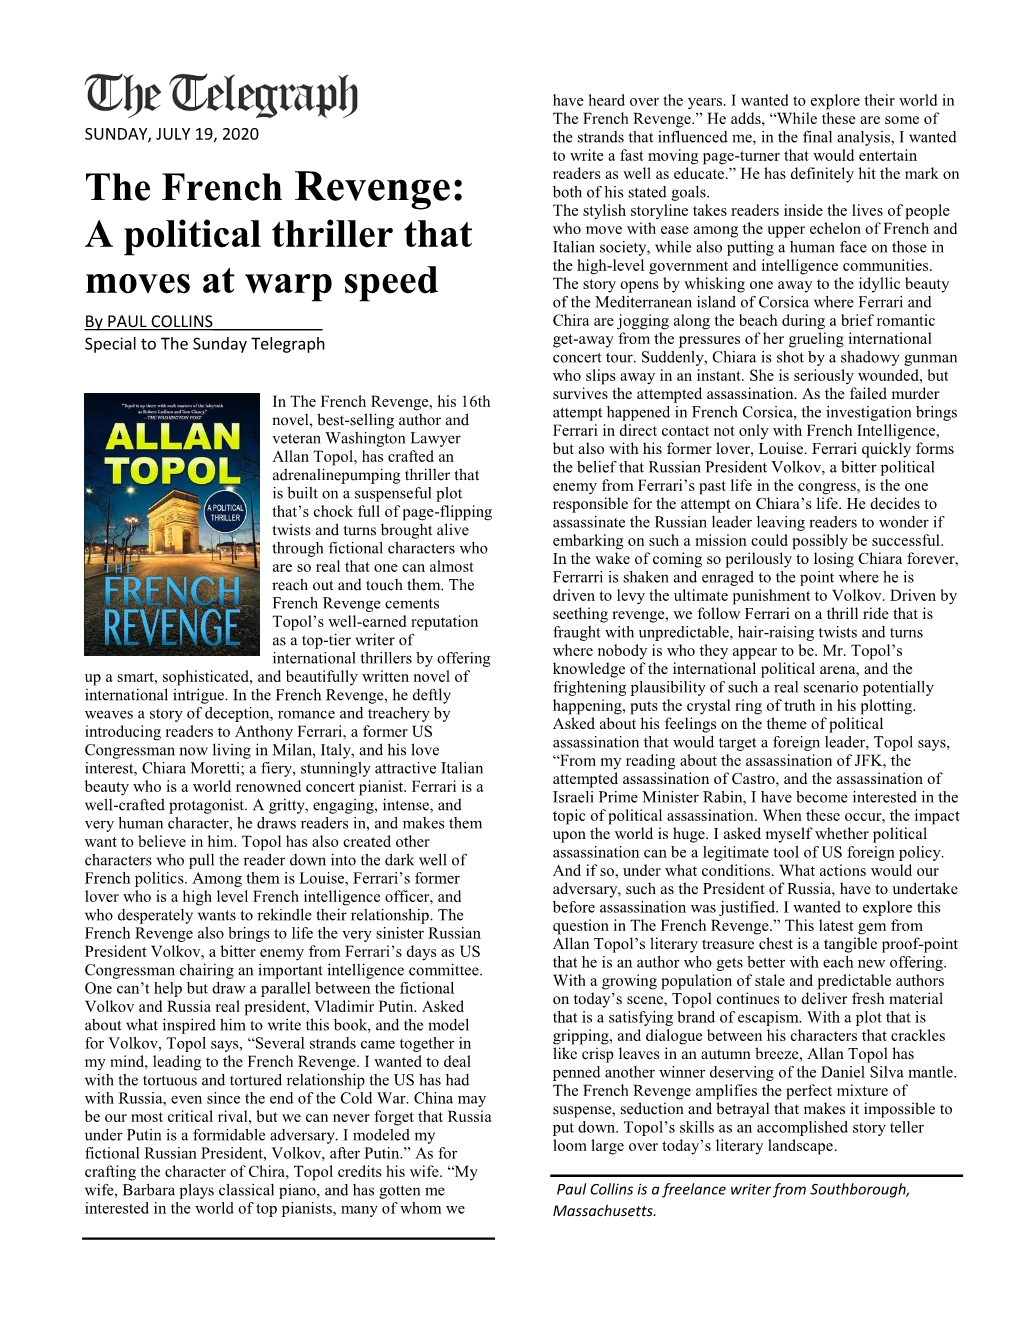 The French Revenge